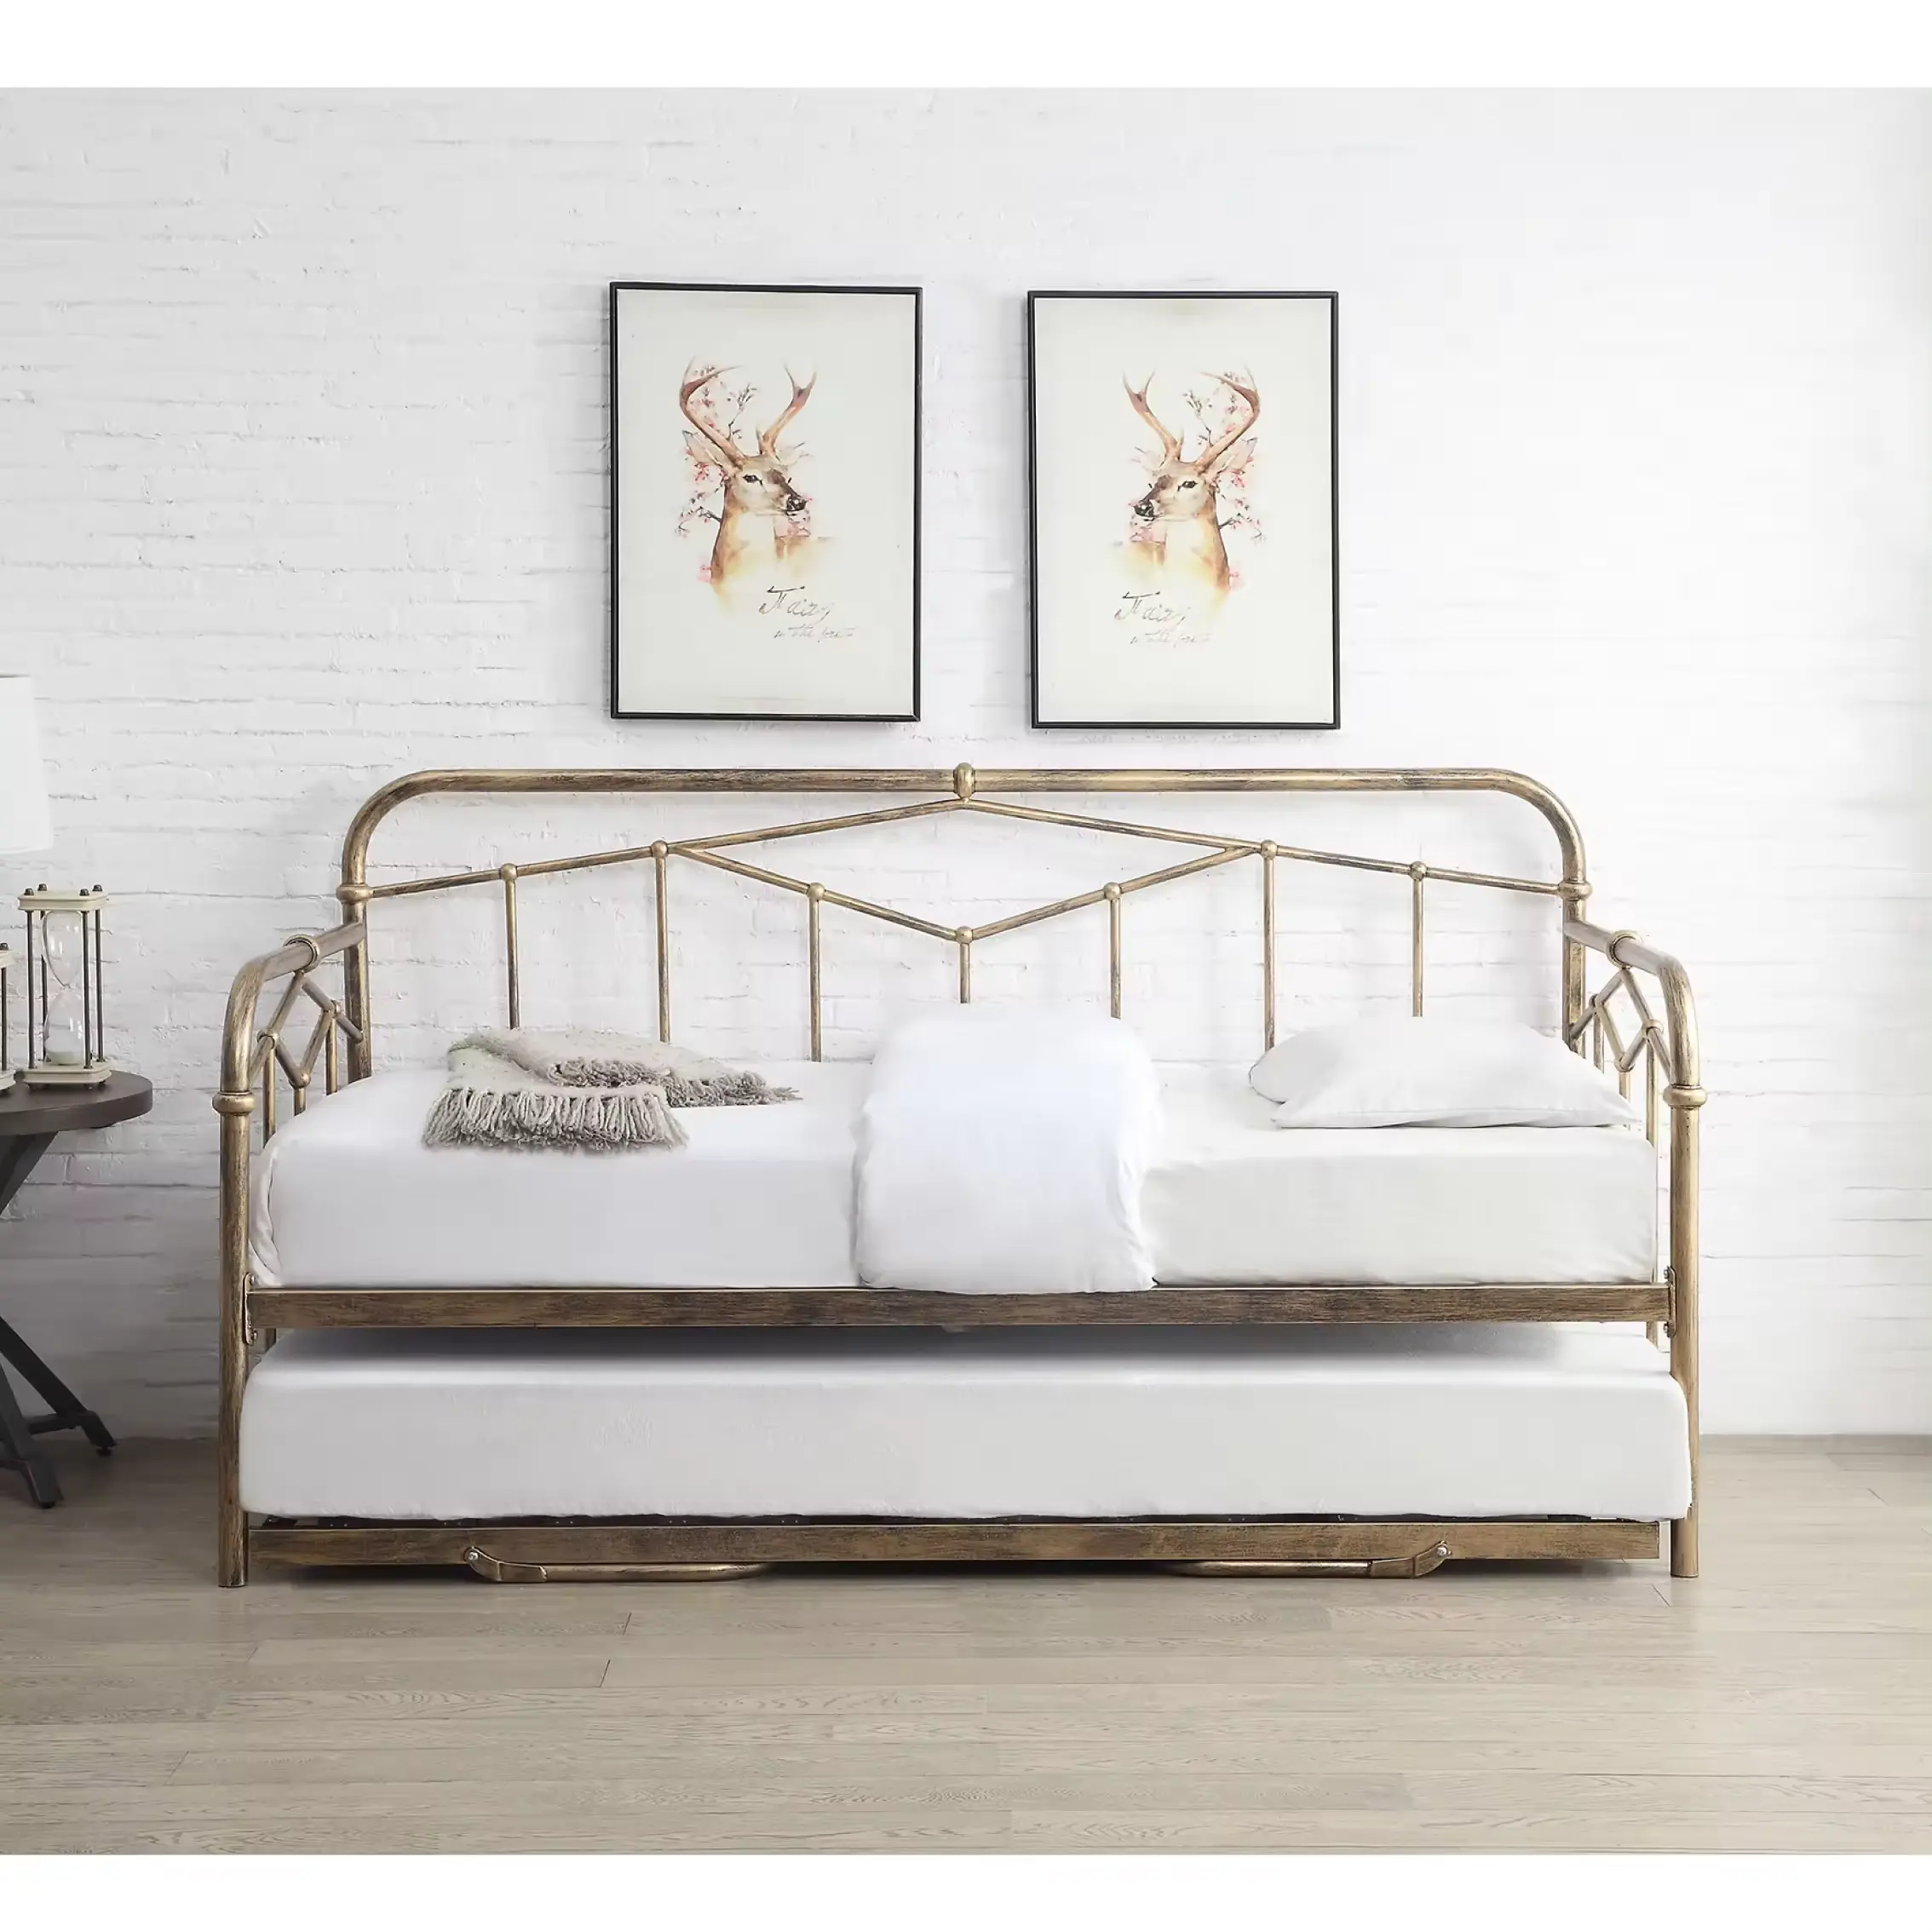 उच्च गुणवत्ता क्लासिक आधुनिक शैली एकल आकार काला कांस्य गढ़ा लोहे का सोफा बिस्तर कुंडल के साथ धातु बिस्तर